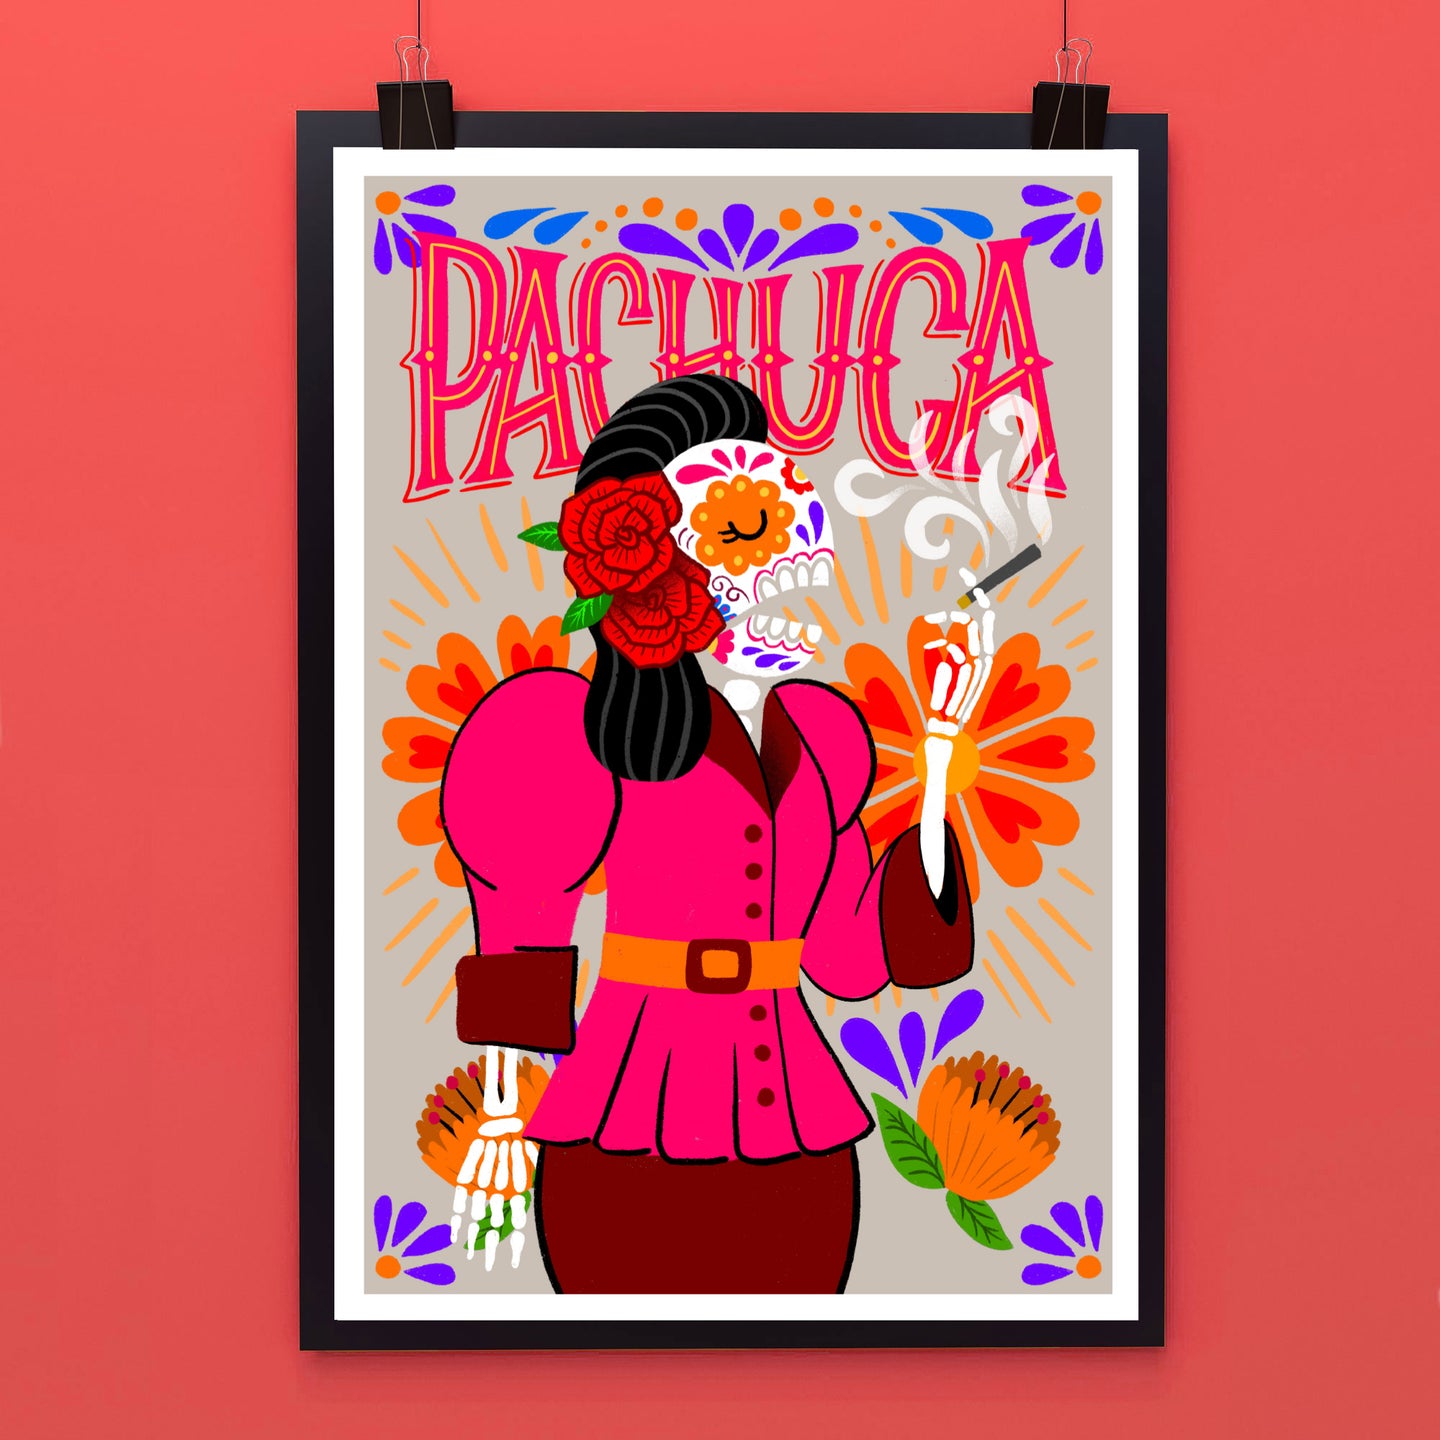 La Pachuca